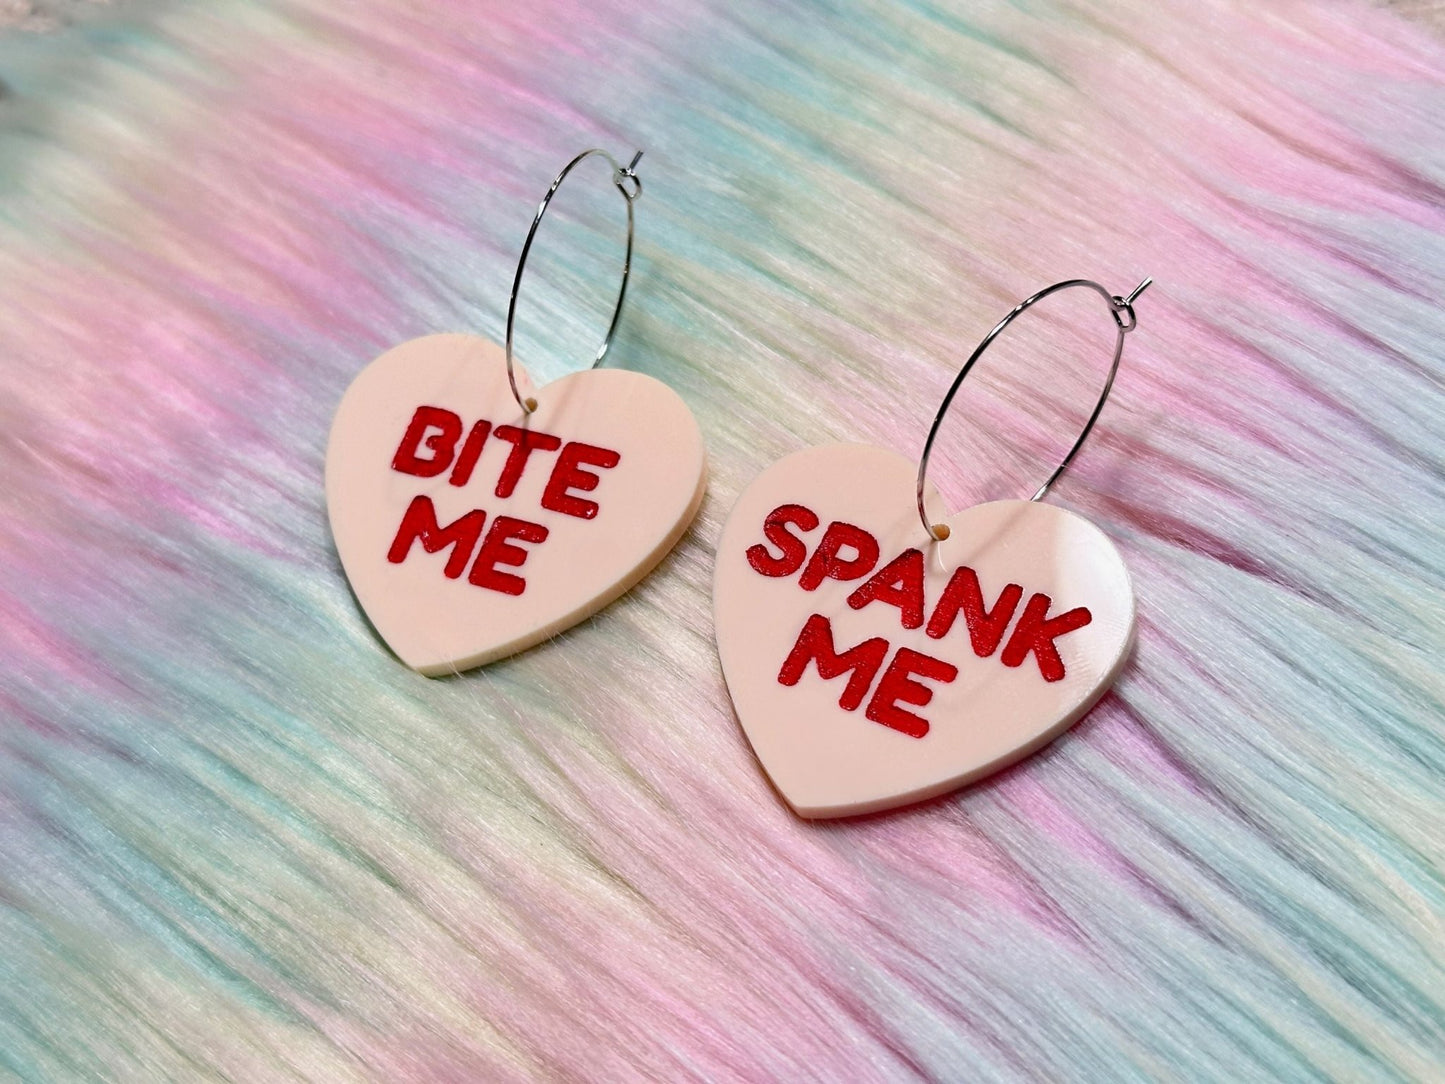 Raunchy Heart Earrings - "Bite Me, Spank Me" - Painted Raina